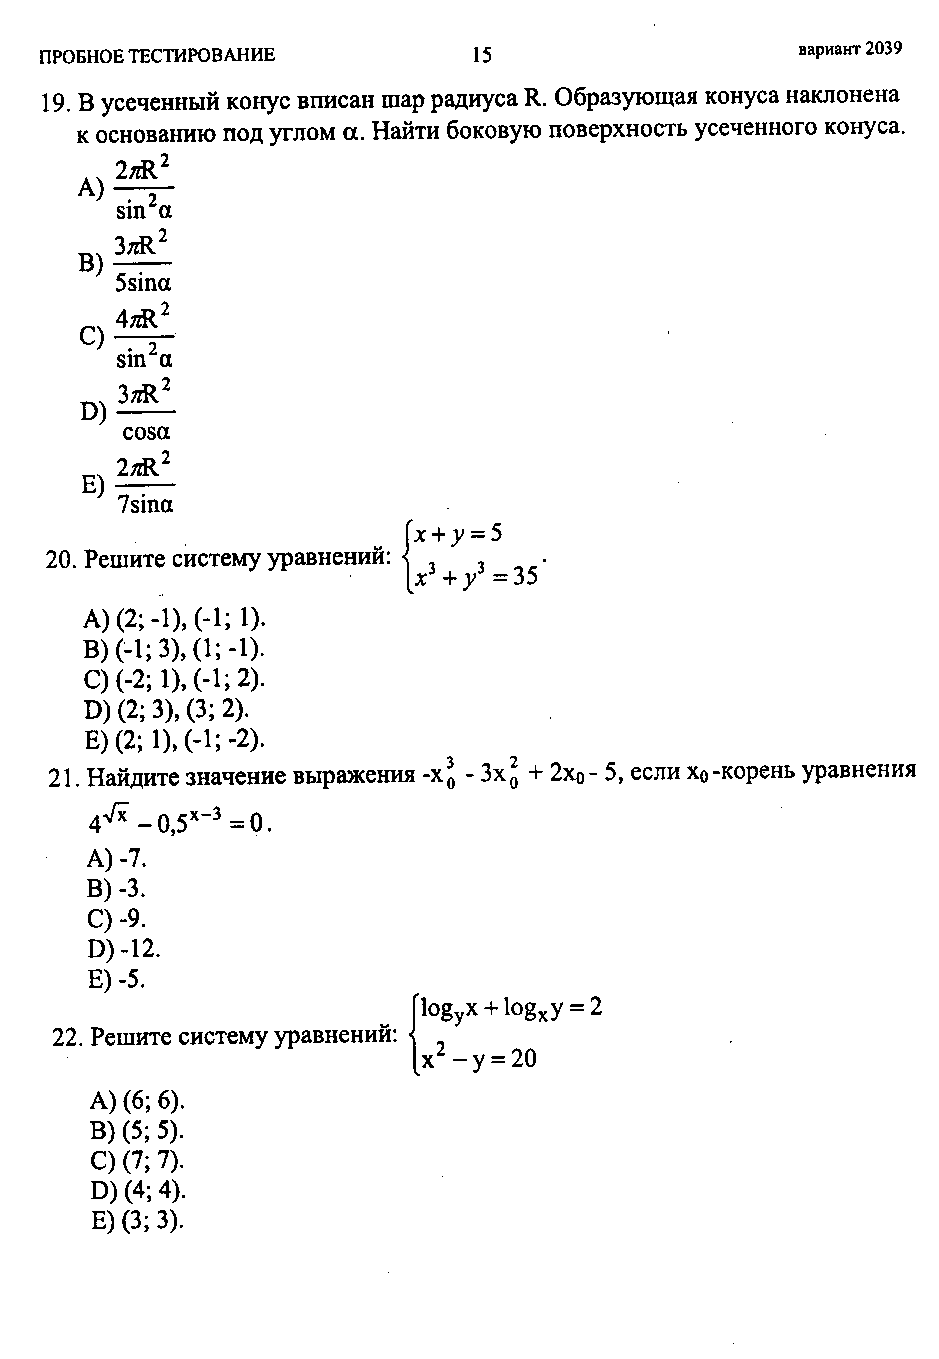 Тестовые задания по теме Логарифмические уравнения и неравенства (10 и 11 классы)